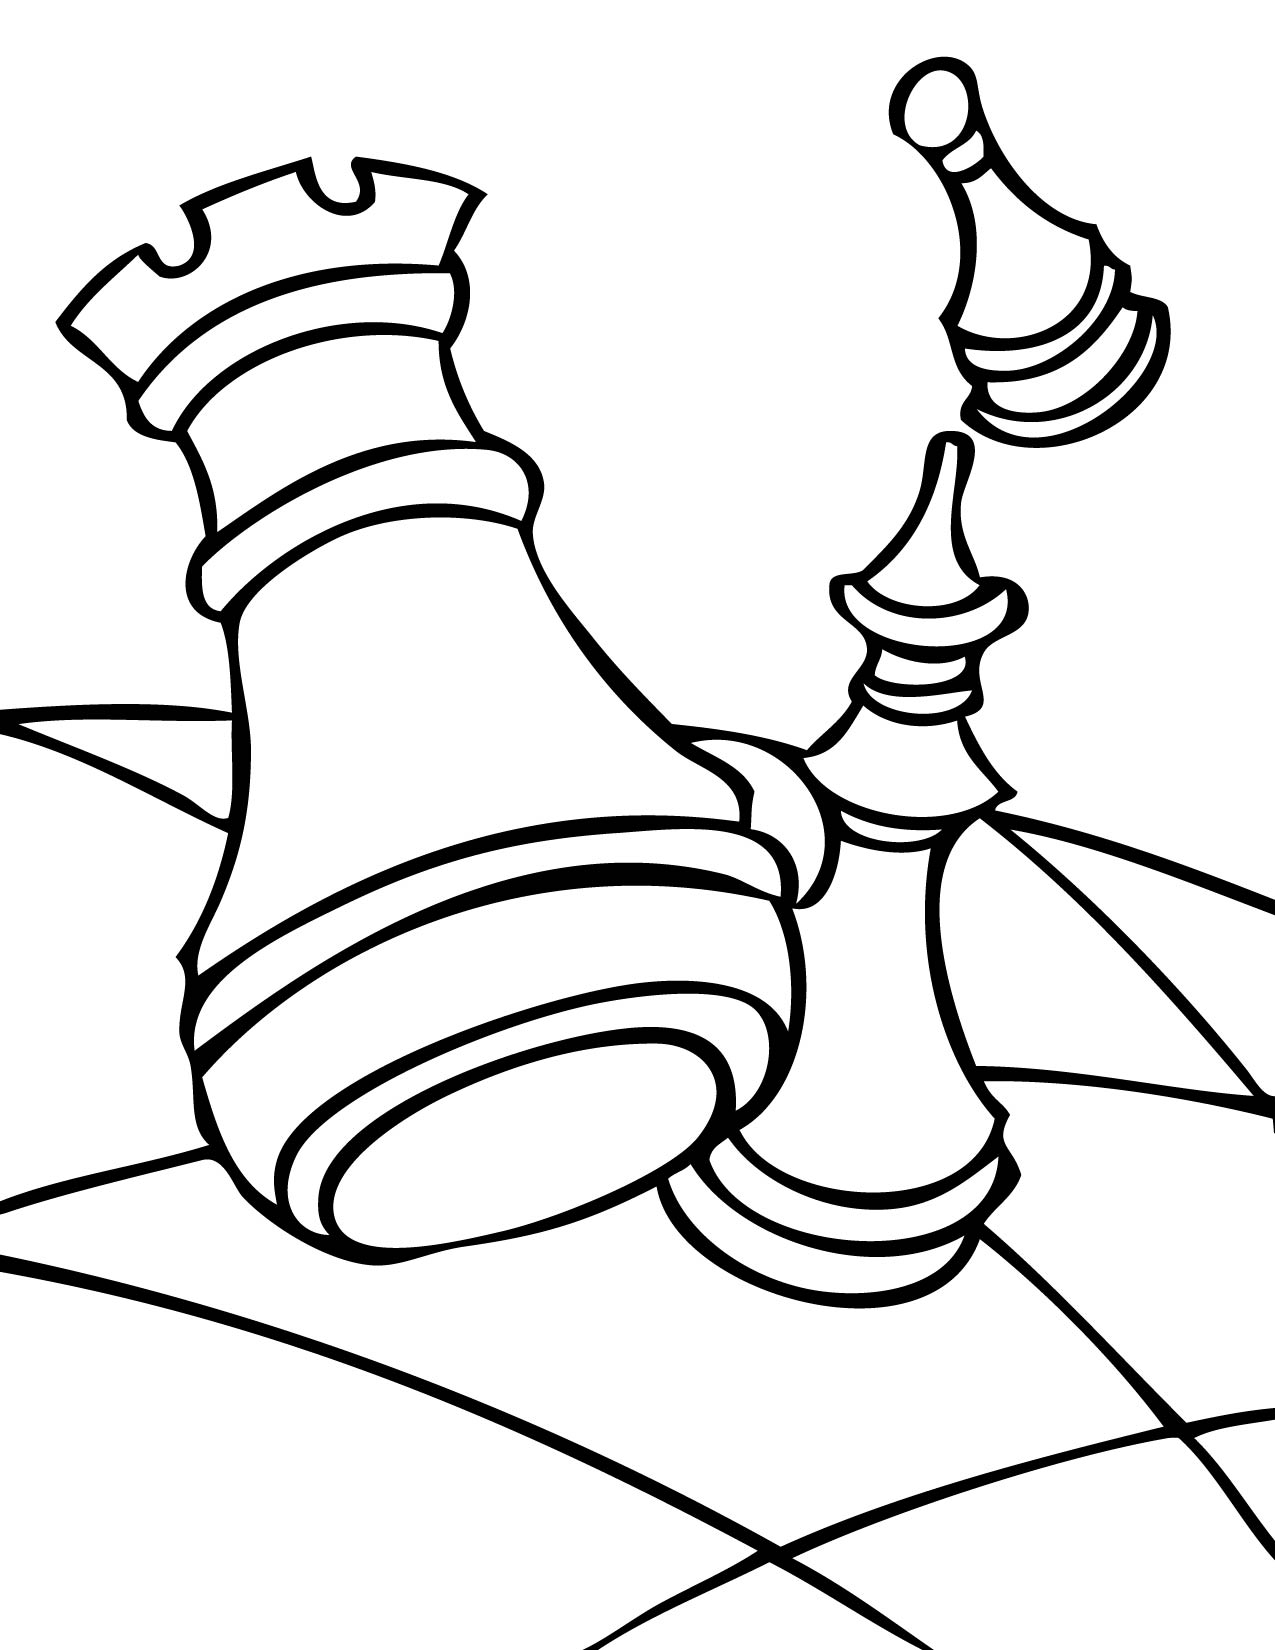 Desenhos para colorir de peões de xadrez de desenhos animados - Desenhos  para colorir gratuitos para impressão